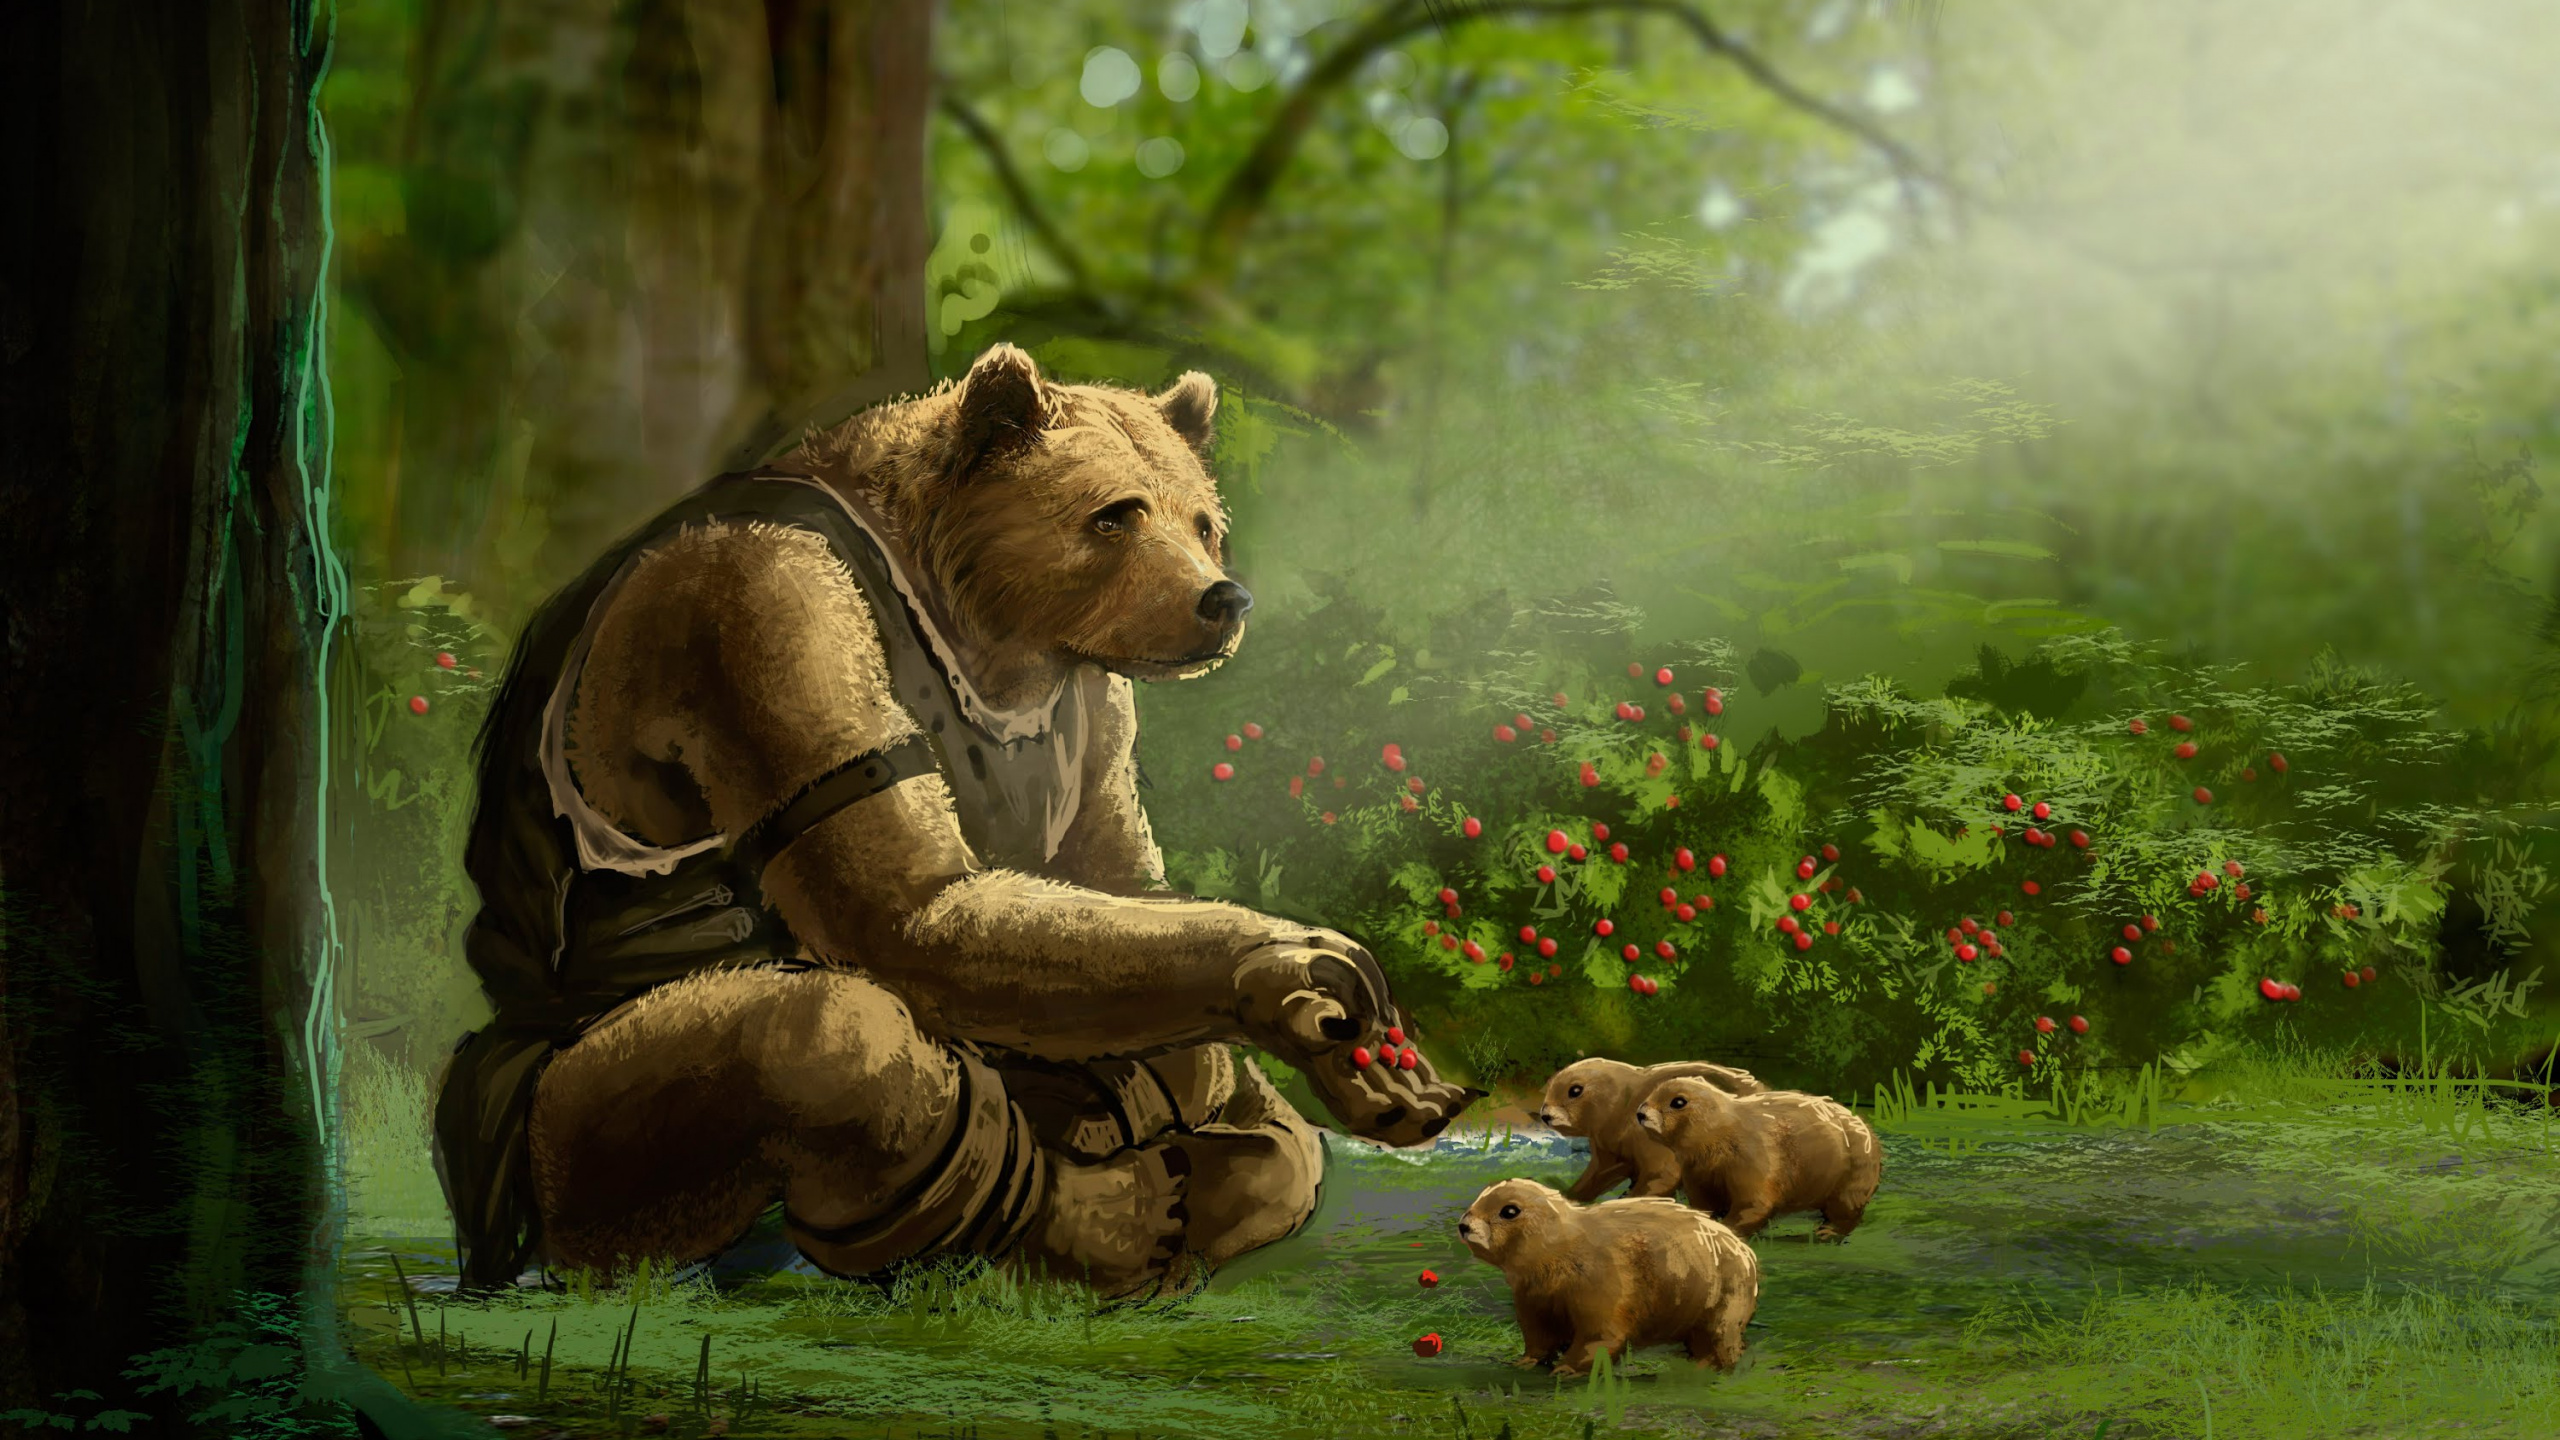 棕熊, 陆地动物, 艺术, 野生动物, 丛林 壁纸 2560x1440 允许